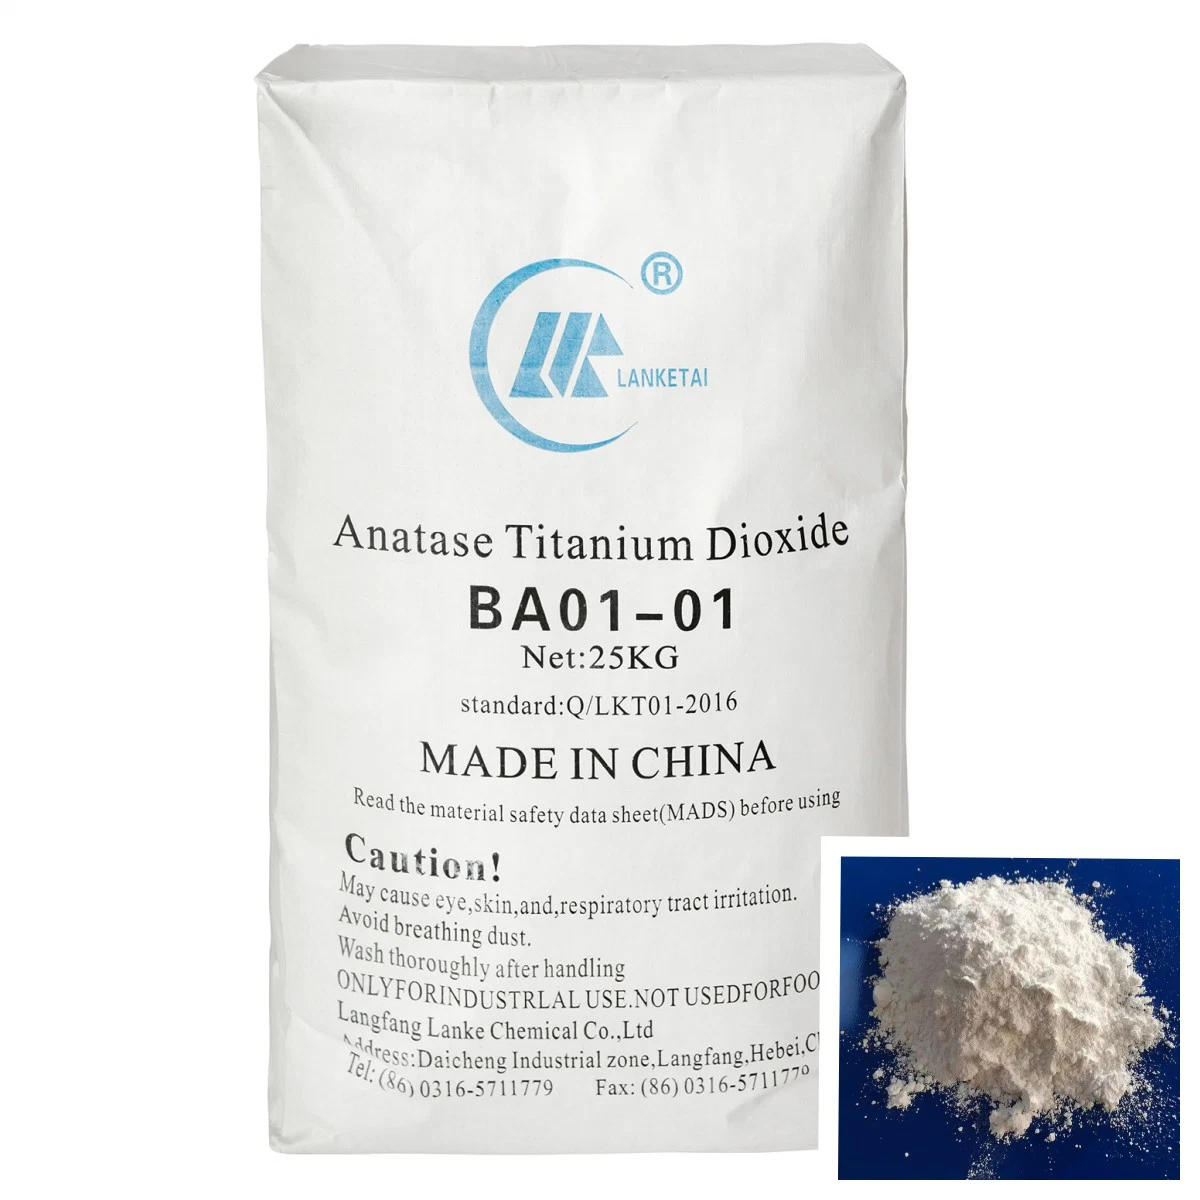 Оптовые цены рутил класс/Anatase марки диоксида титана (БА01-01) пигментных красителей химических веществ